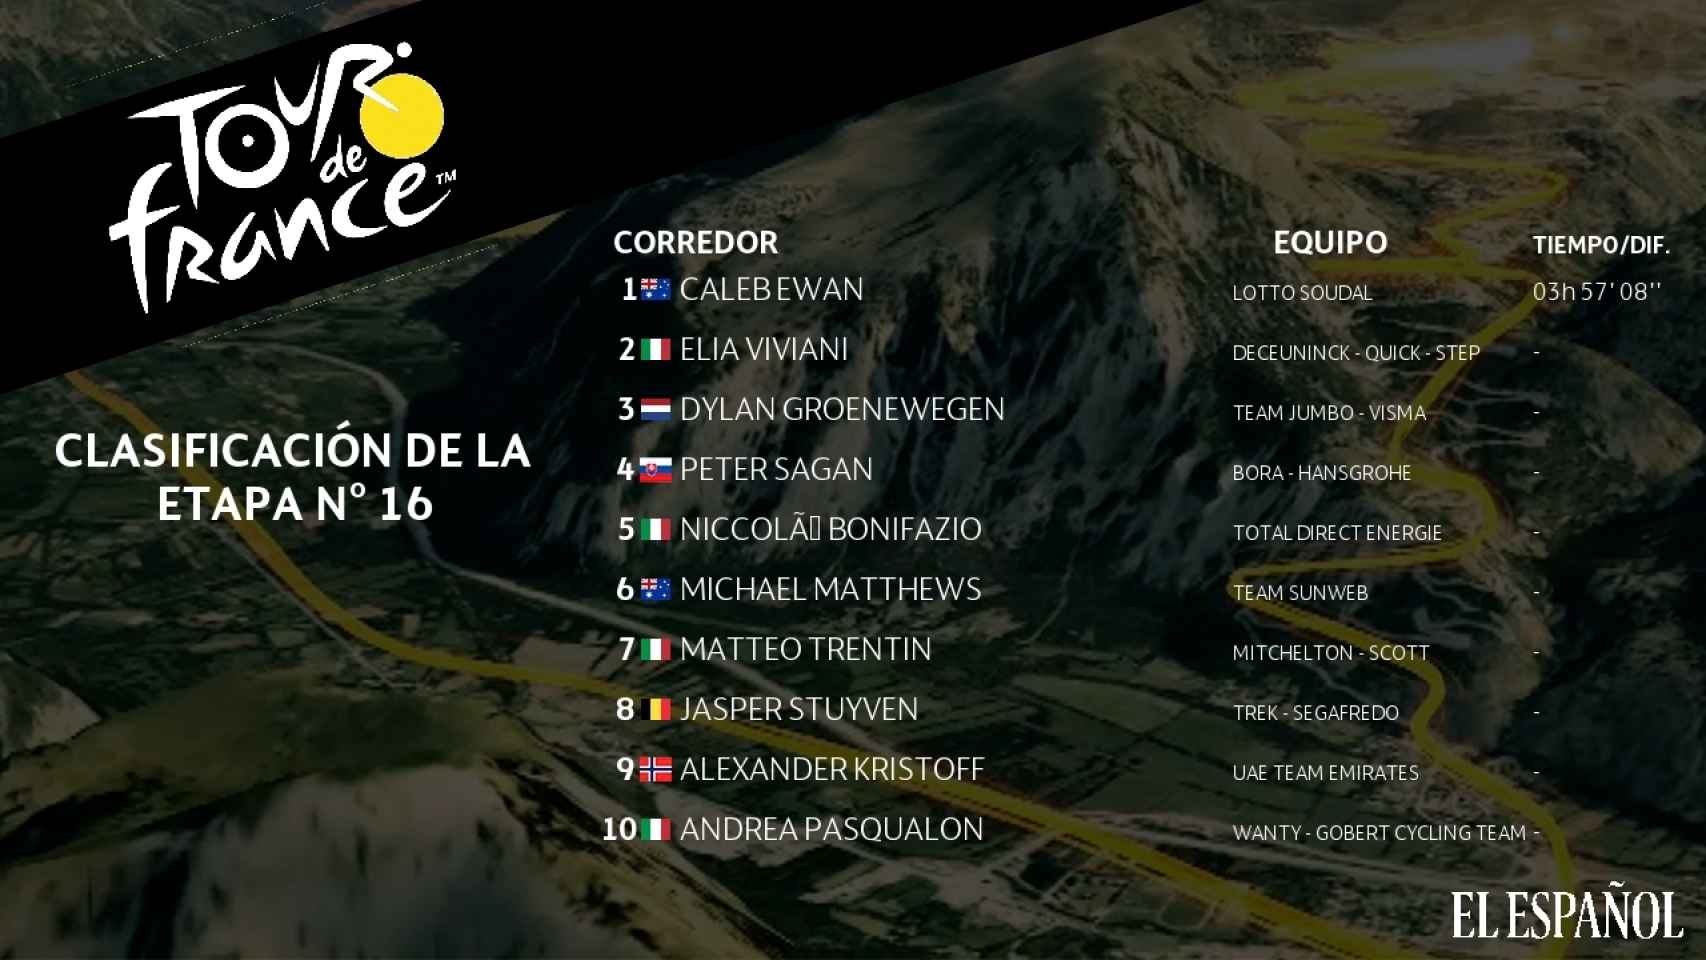 Clasificación de la etapa 16 del Tour de Francia 2019